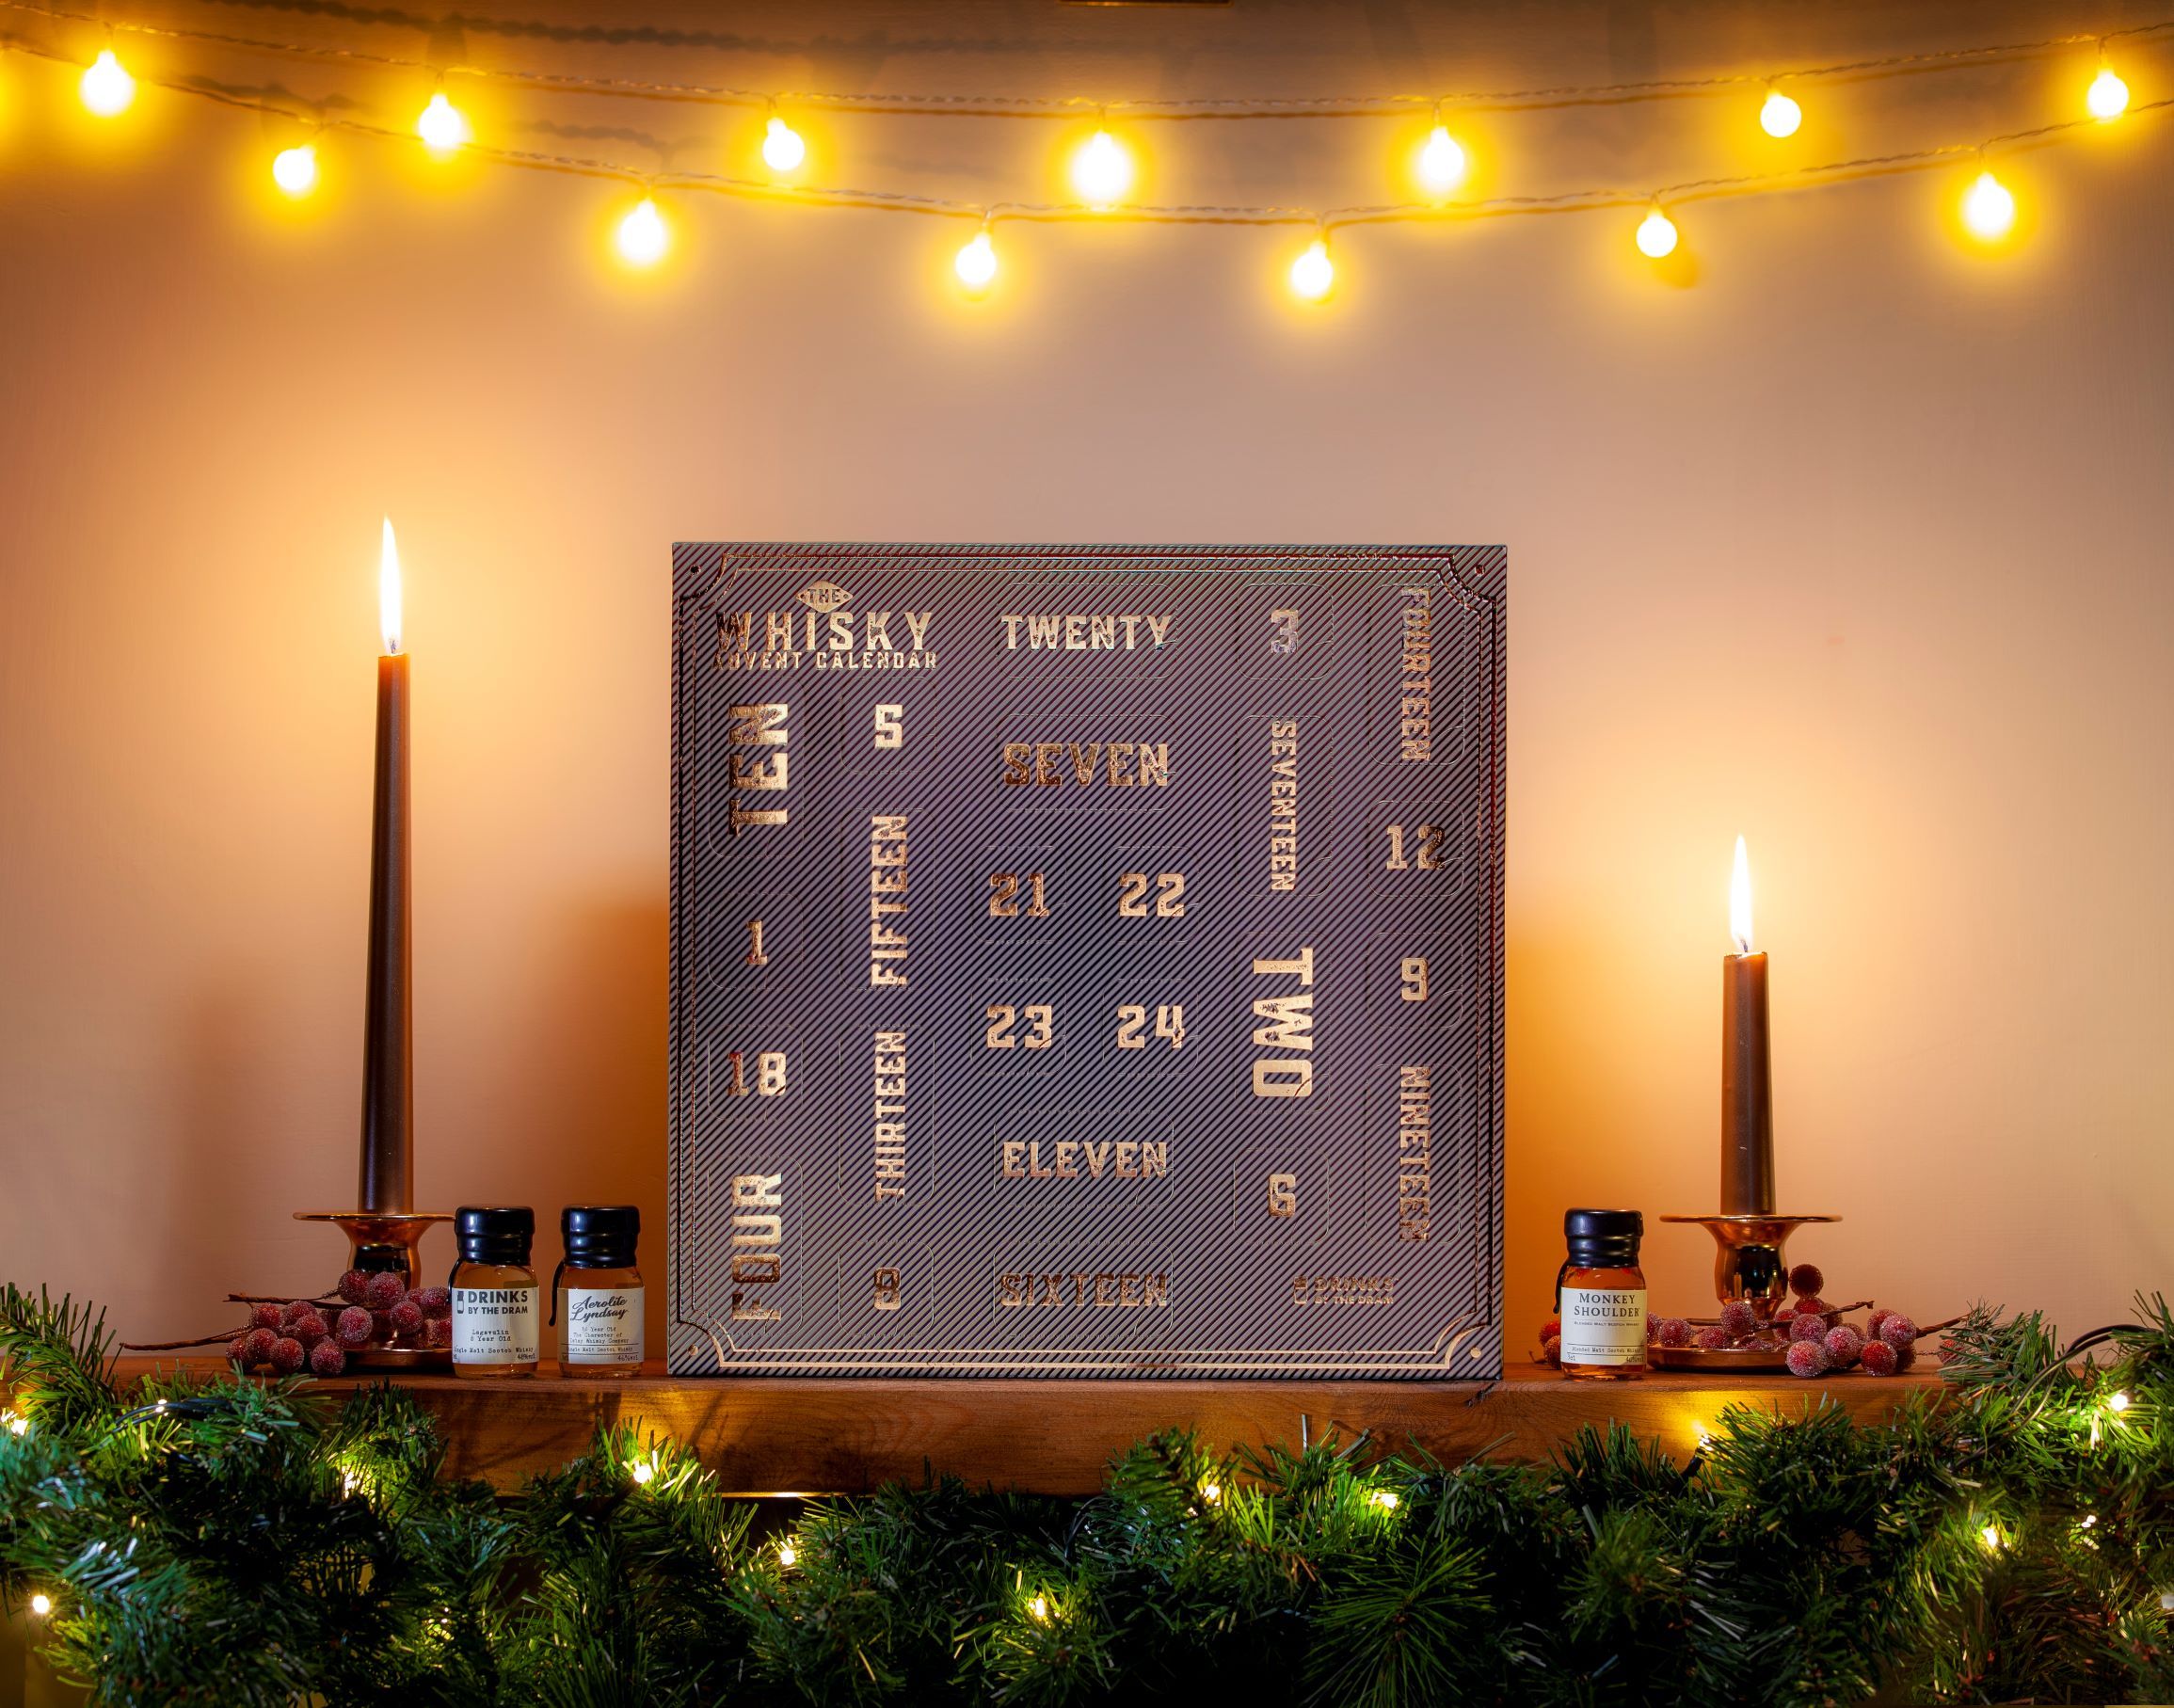 The Whisky Advent Calendar 2021